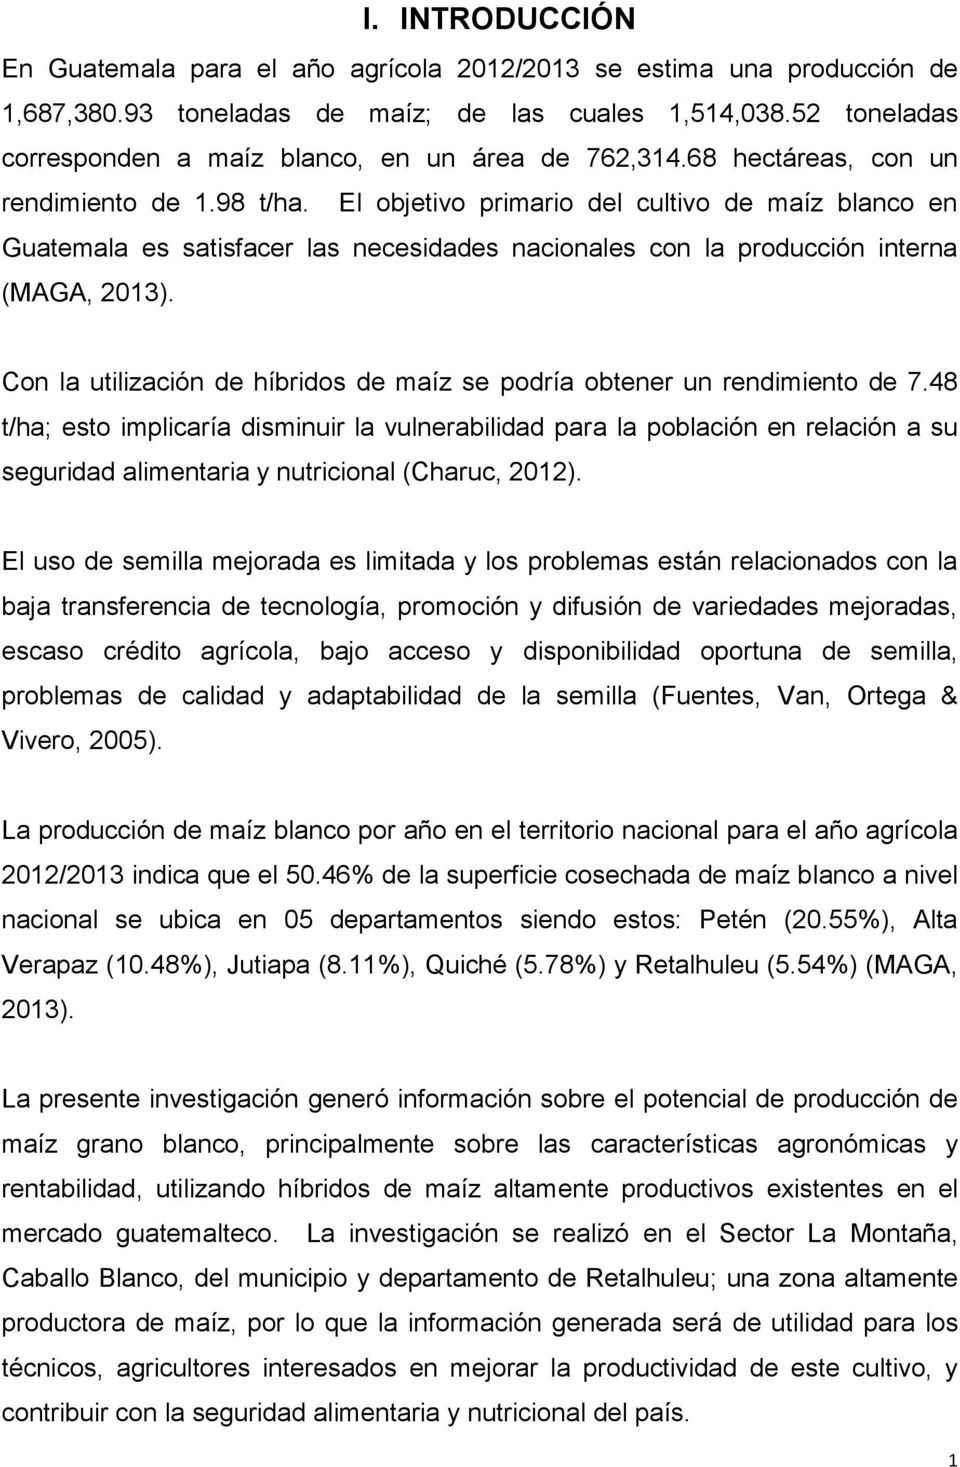 El objetivo primario del cultivo de maíz blanco en Guatemala es satisfacer las necesidades nacionales con la producción interna (MAGA, 2013).